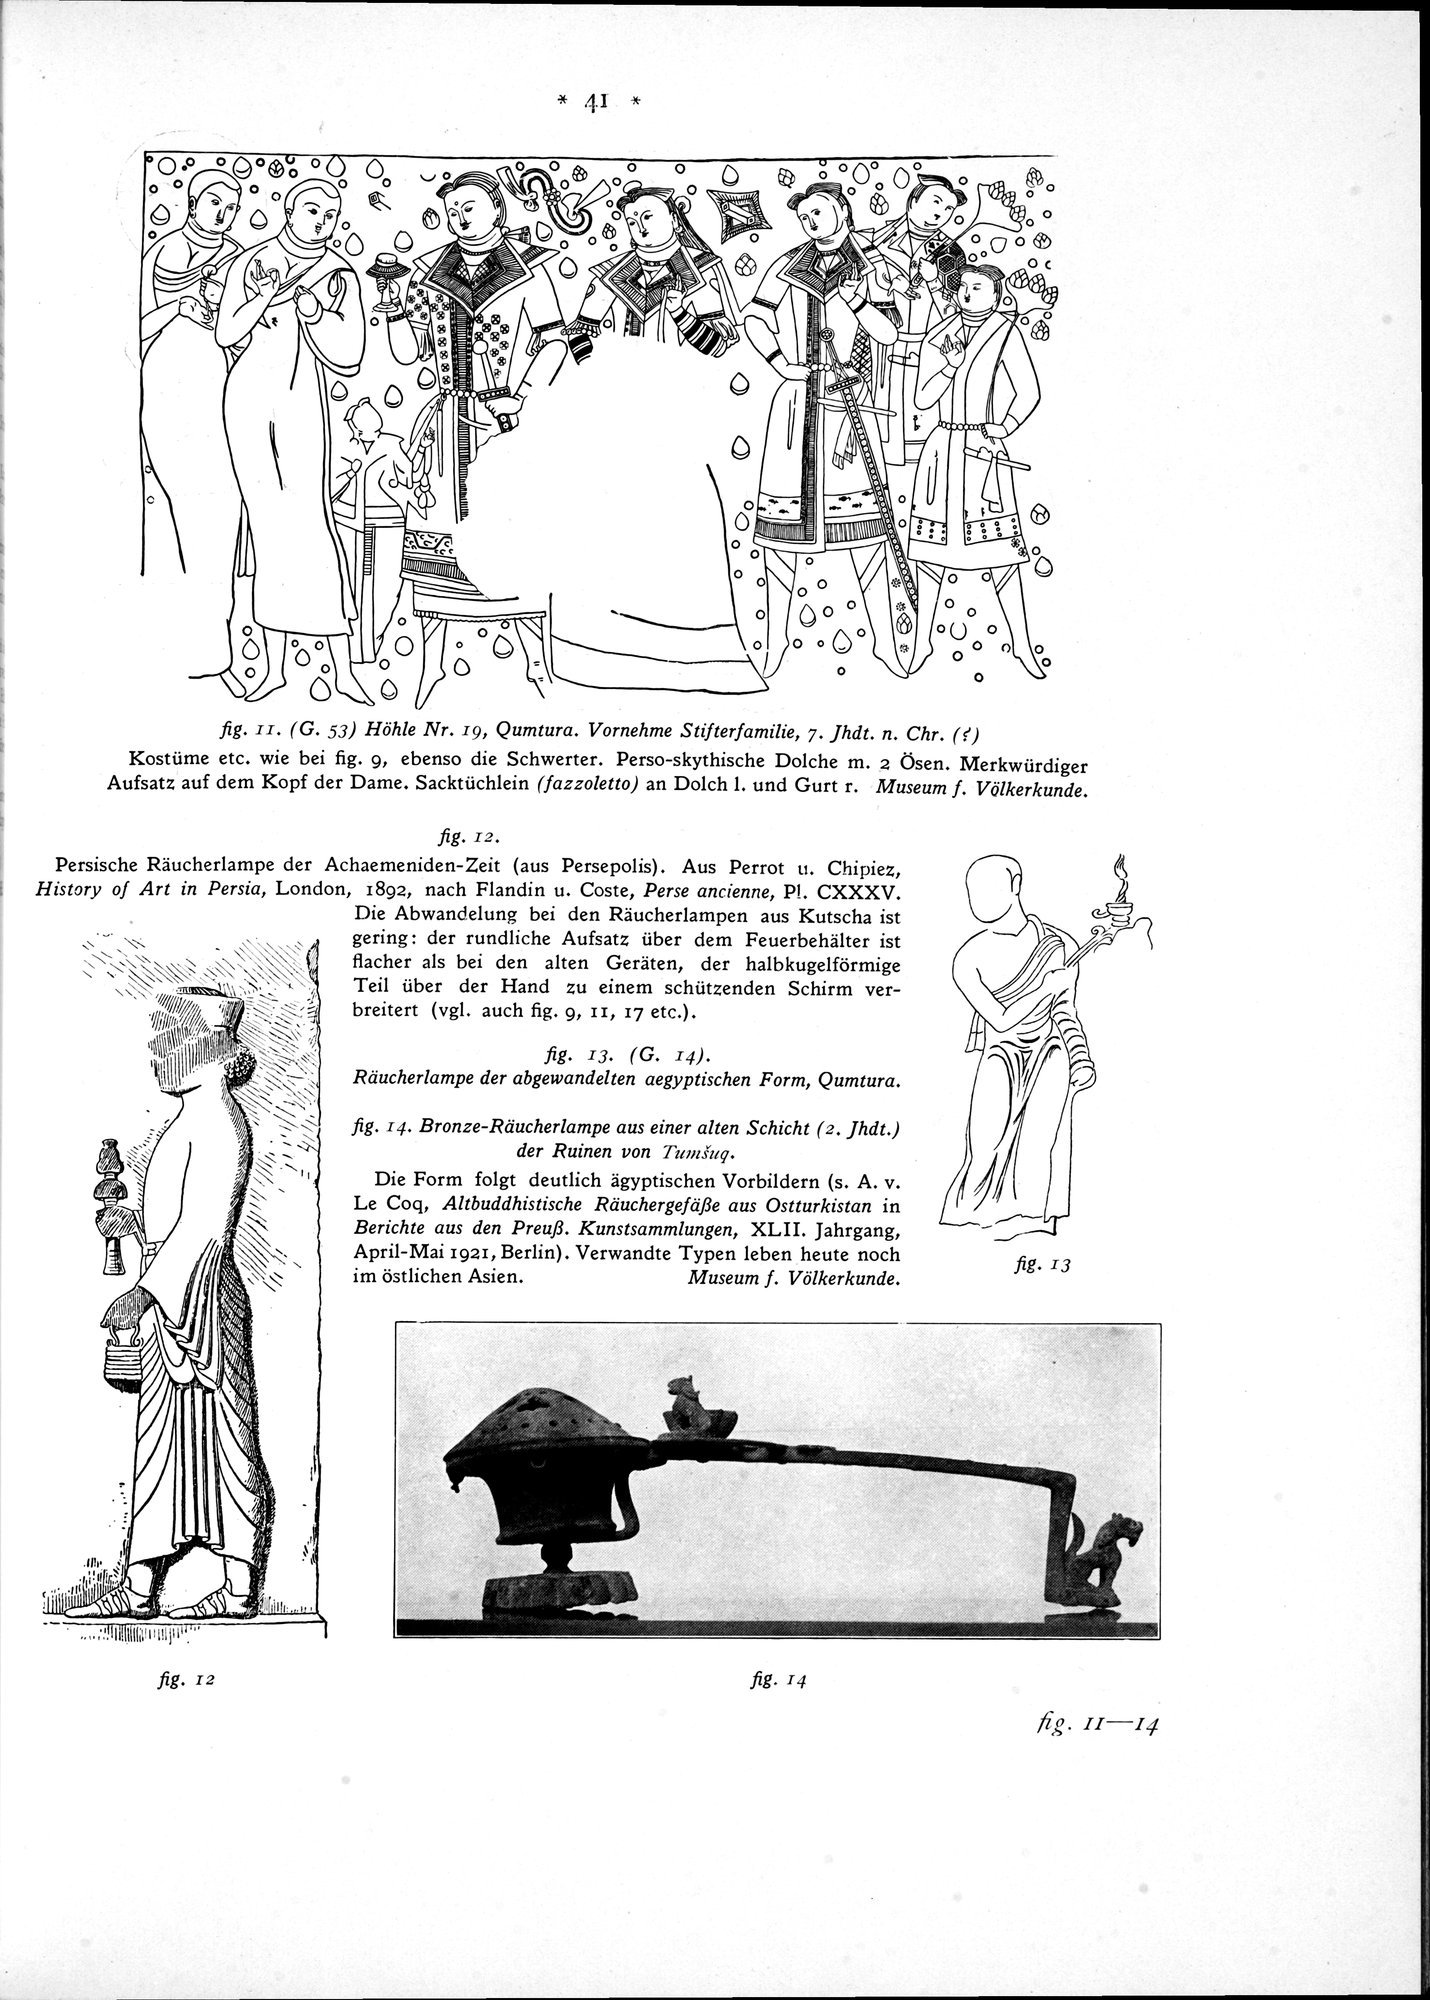 Bilderatlas zur Kunst und Kulturgeschichte Mittel-Asiens : vol.1 / Page 45 (Grayscale High Resolution Image)